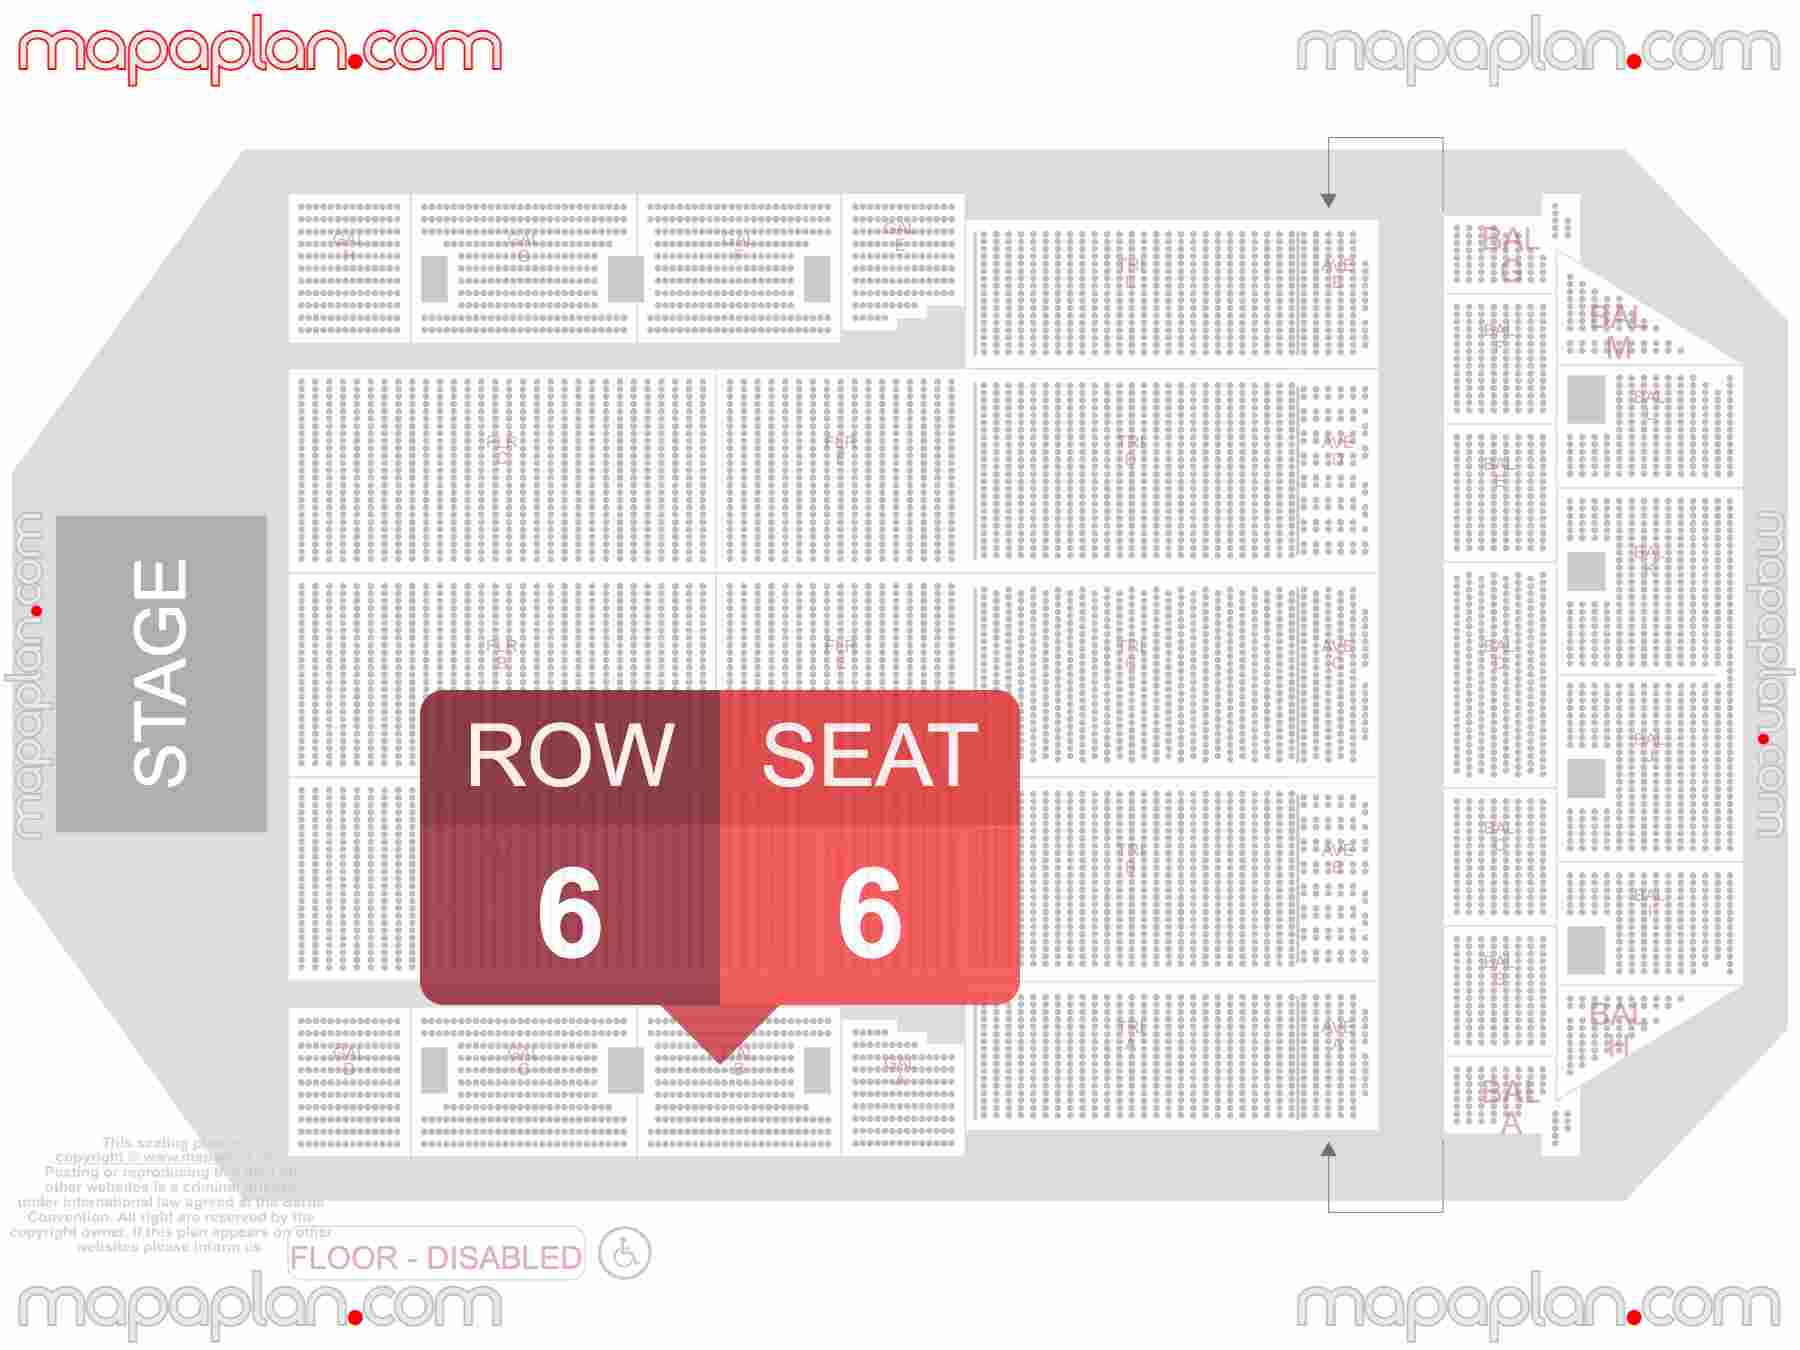 Brussels ING Arena seating plan Concert plattegrond met zitplaatsen nummering en rijnummers beste plaatsen blokken zaalplan - detailed seat numbers and row numbering plan with interactive map map layout